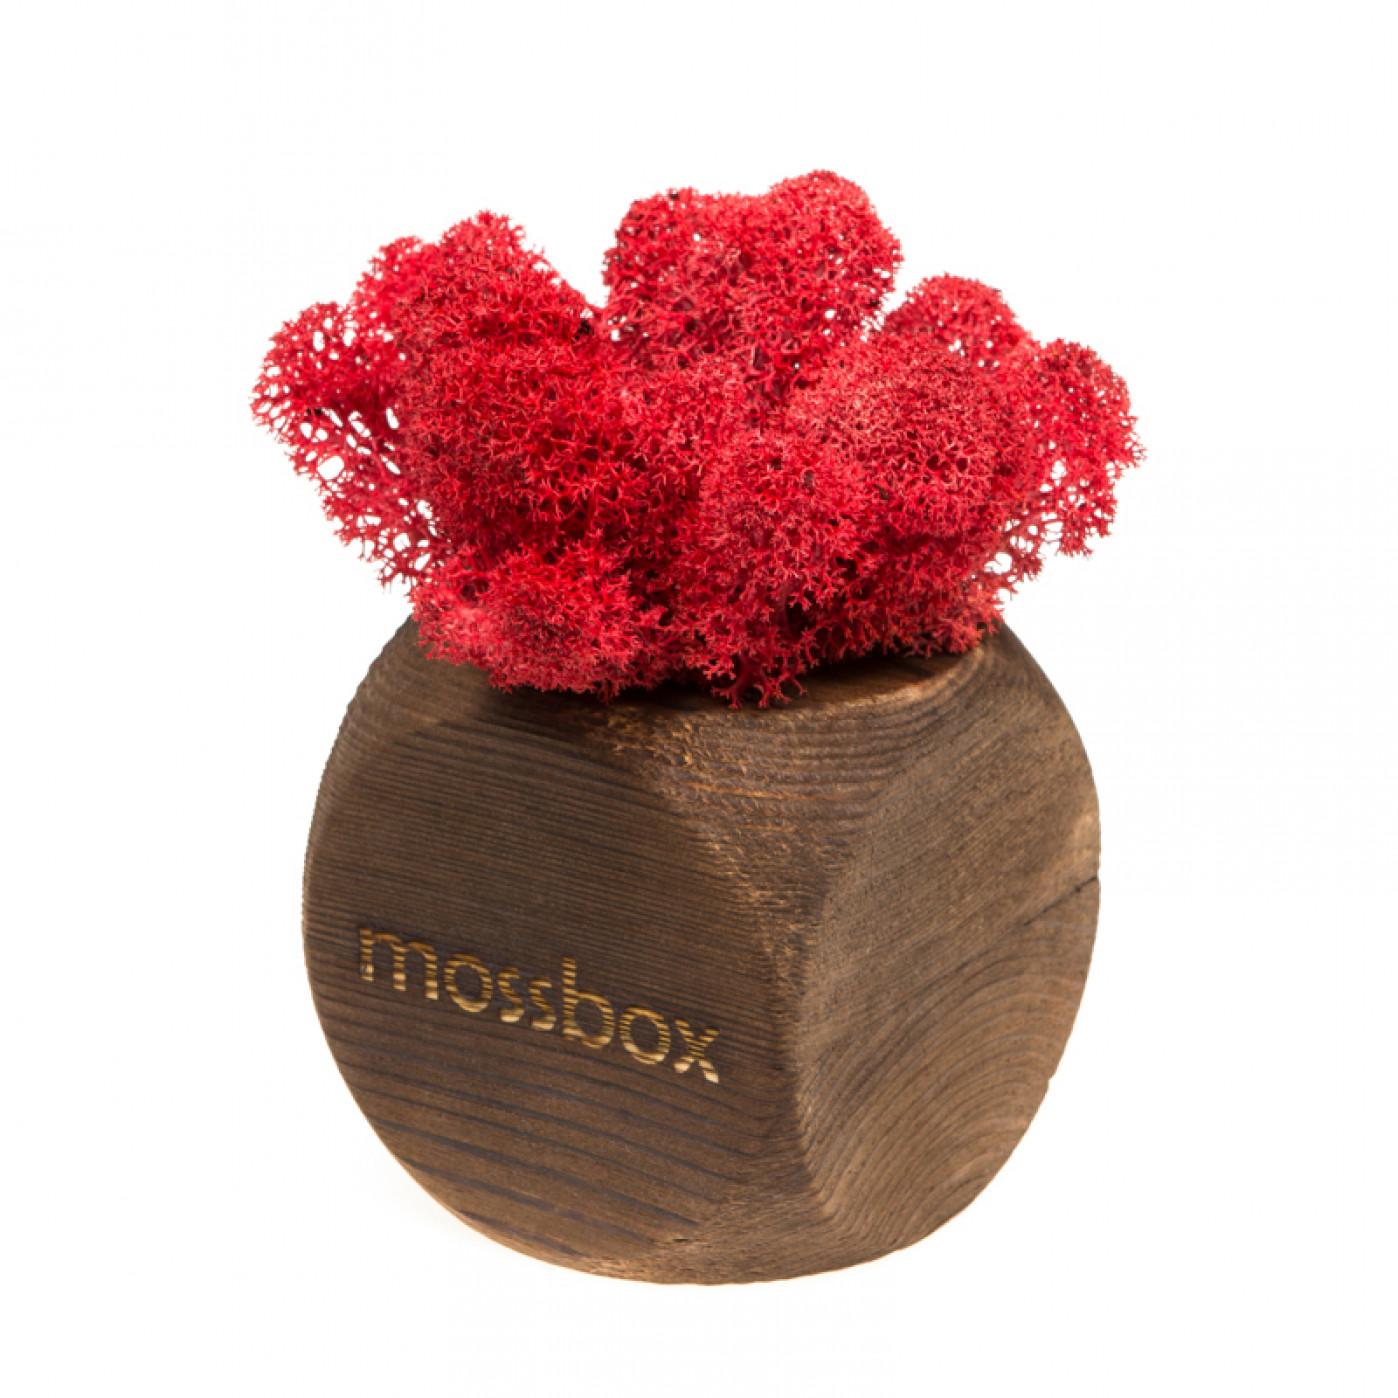 Интерьерный мох MossBox Fire red dice